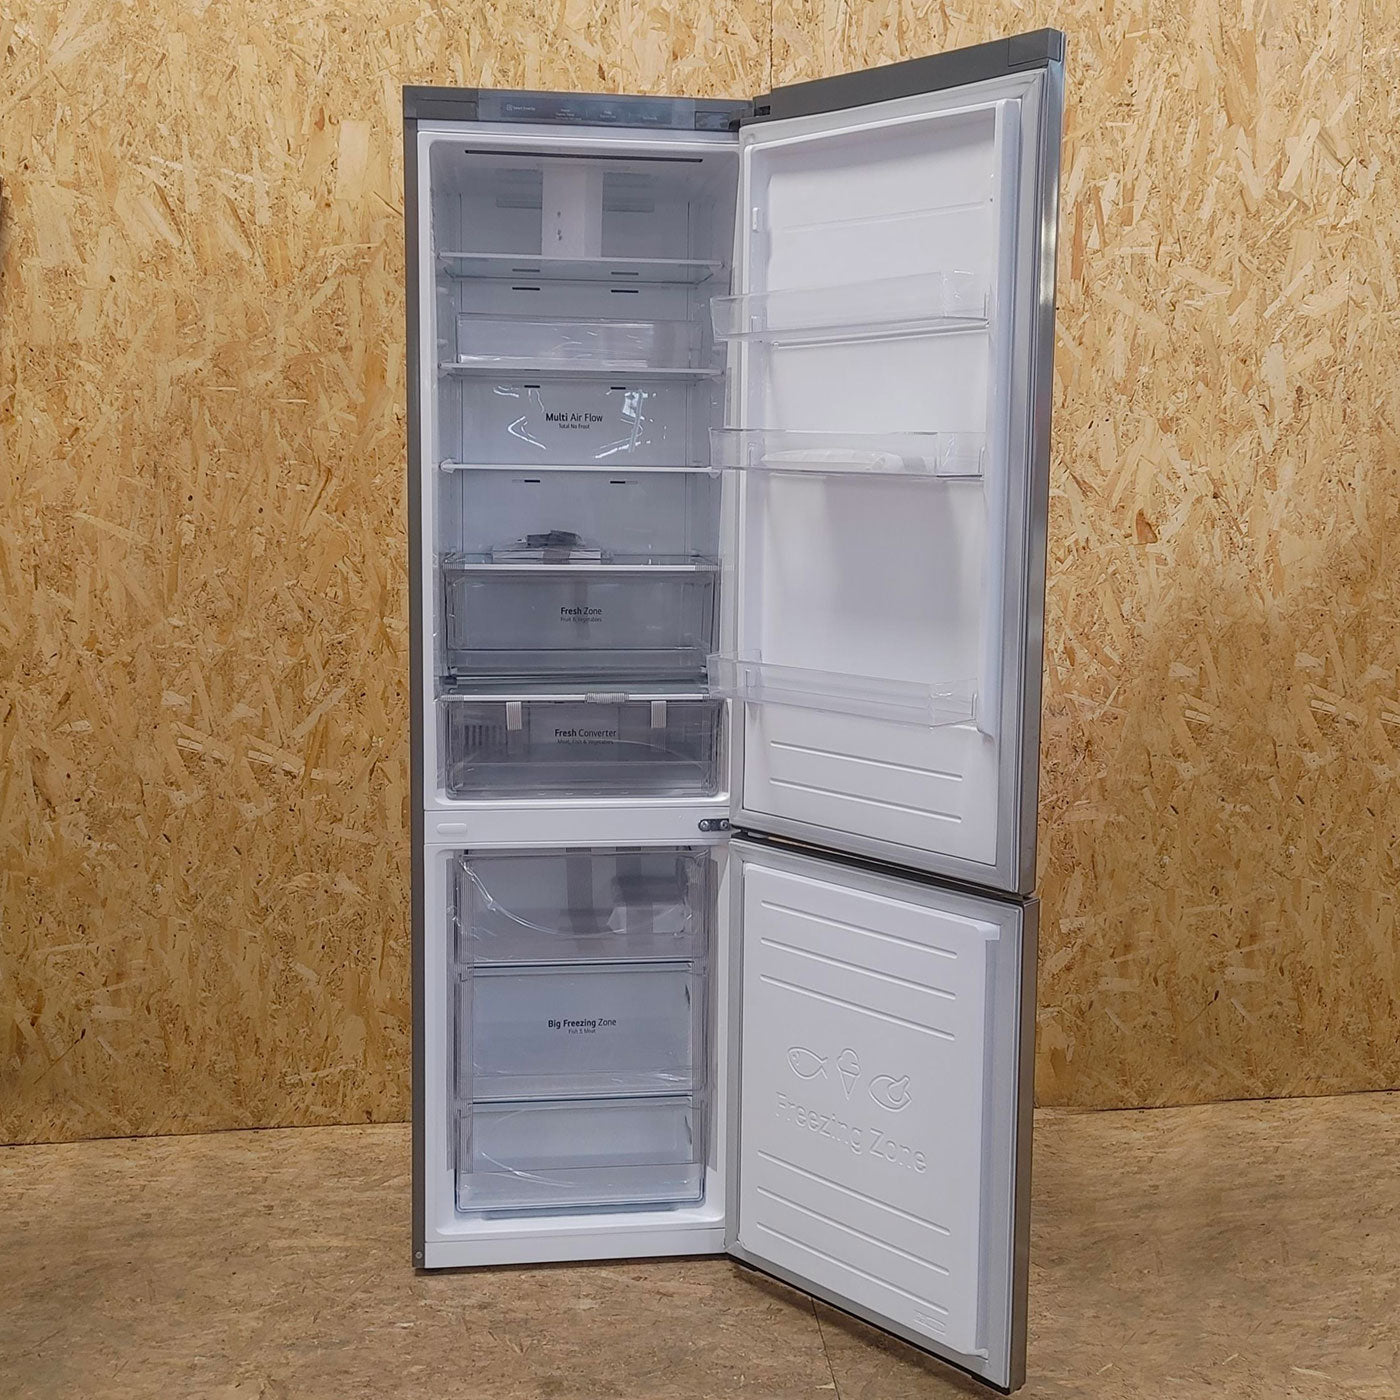 LG GBP62DSNGN frigorifero con congelatore Libera installazione 384 L D Grafite